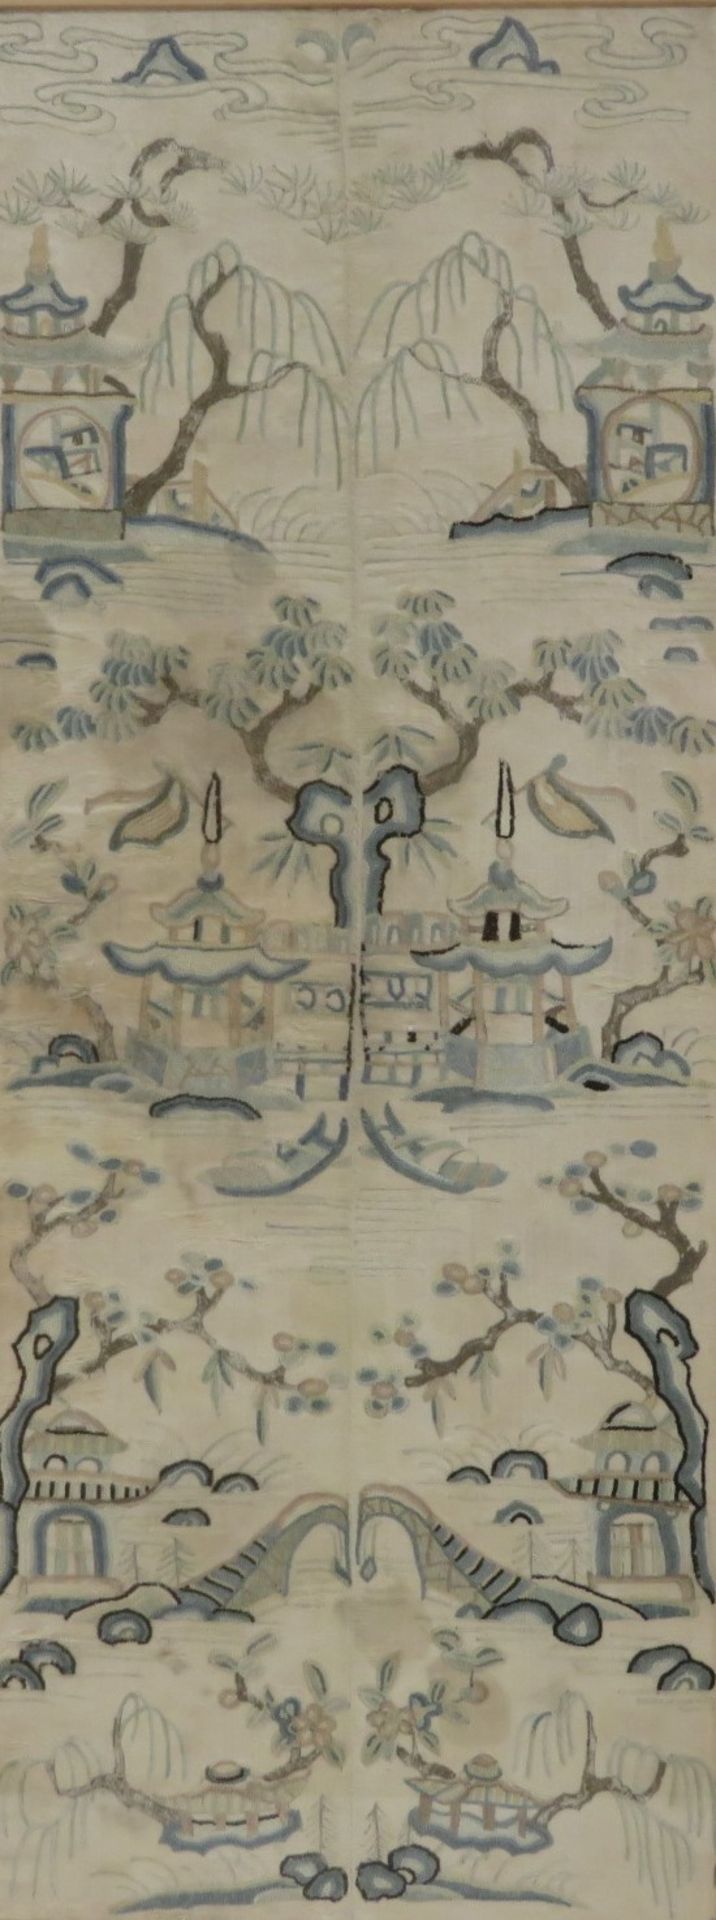 Seidenstickerei, China, 18./19. Jahrhundert, sehr feine Stickerei mit seltenem Knoten, 46 x 18 cm, 